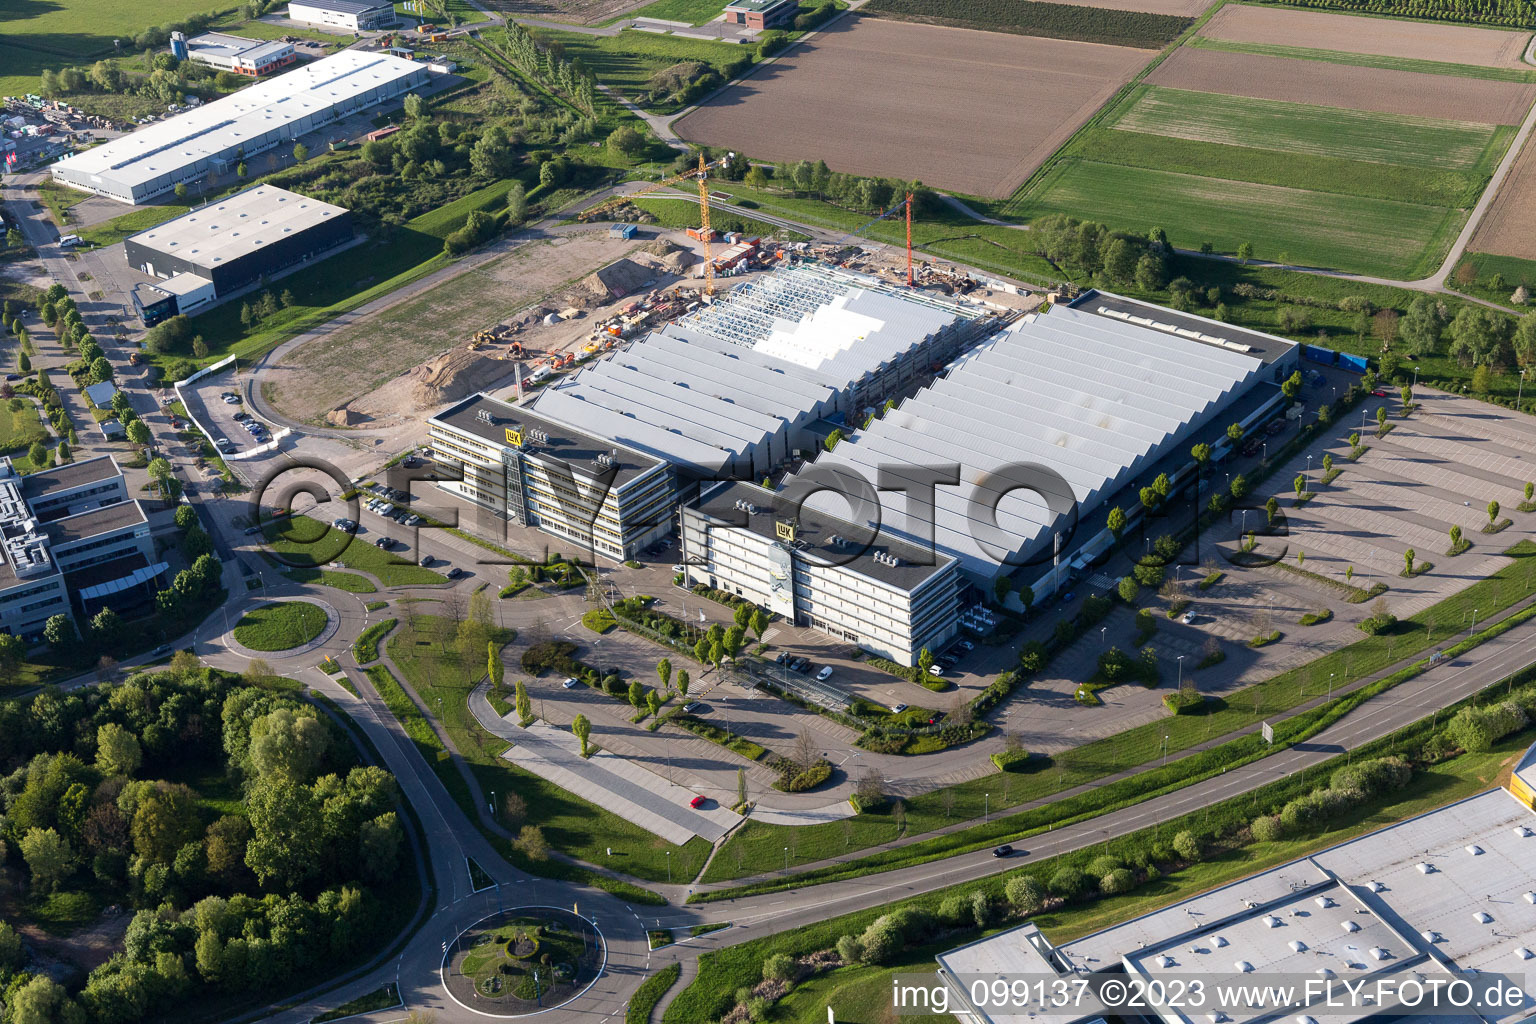 Luftbild von LuK Baustelle in Bühl im Bundesland Baden-Württemberg, Deutschland